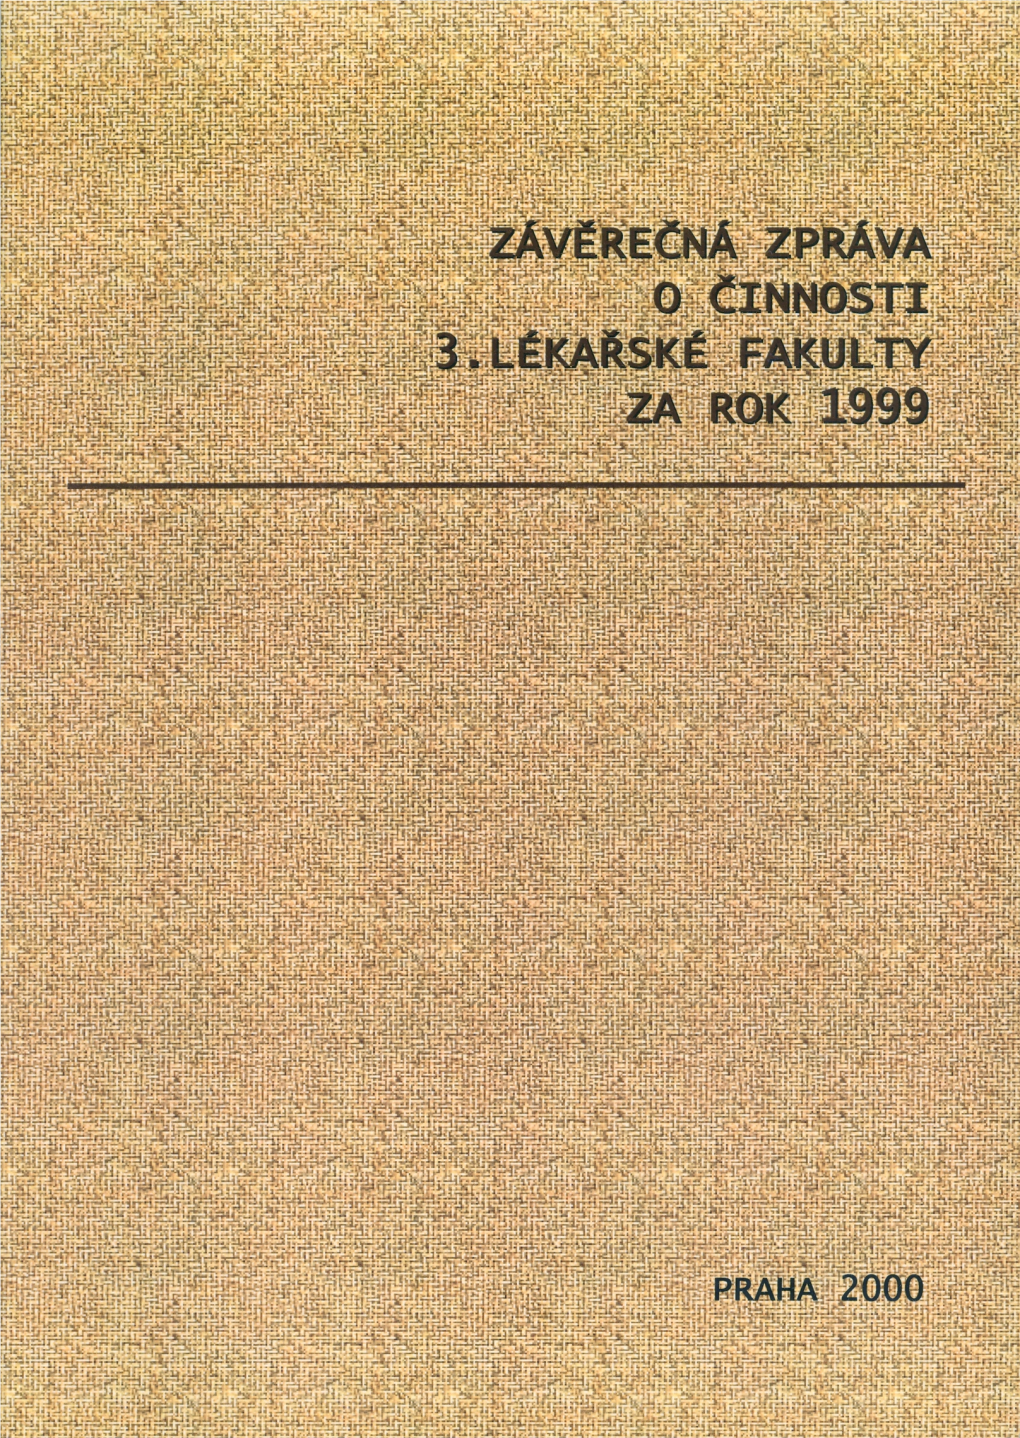 Závěrečná Zpráva O Činnosti 3. Lékařské Fakulty Univerzity Karlovy V Praze Za Rok 1999